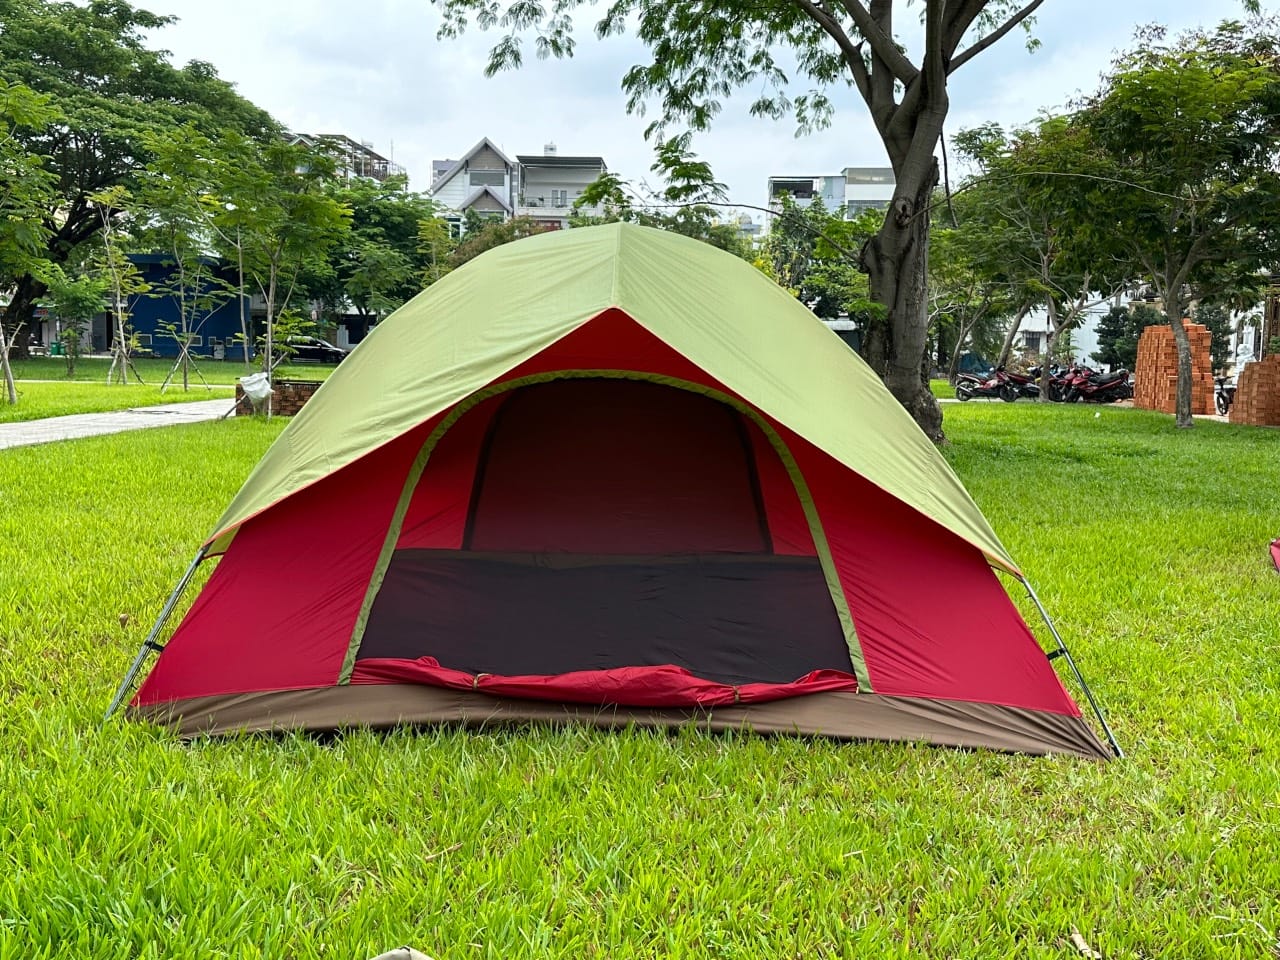 thuê lều cắm trại Đà Nẵng